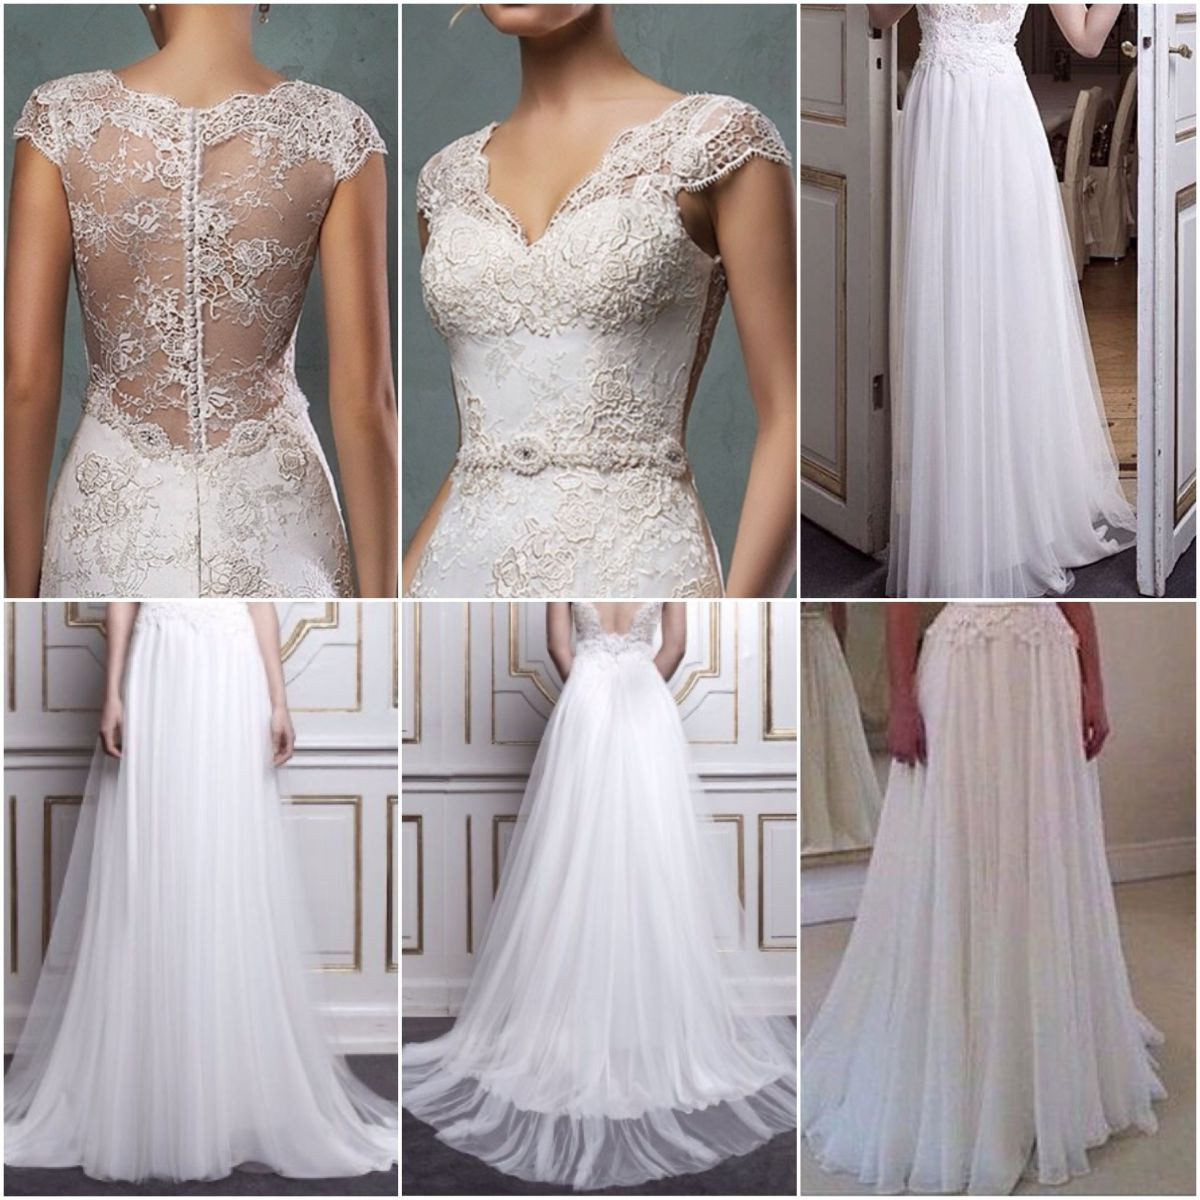 Lace Top Wedding Dress
 Lace Top and Beach Chiffon Bottom bined Bridal Dress